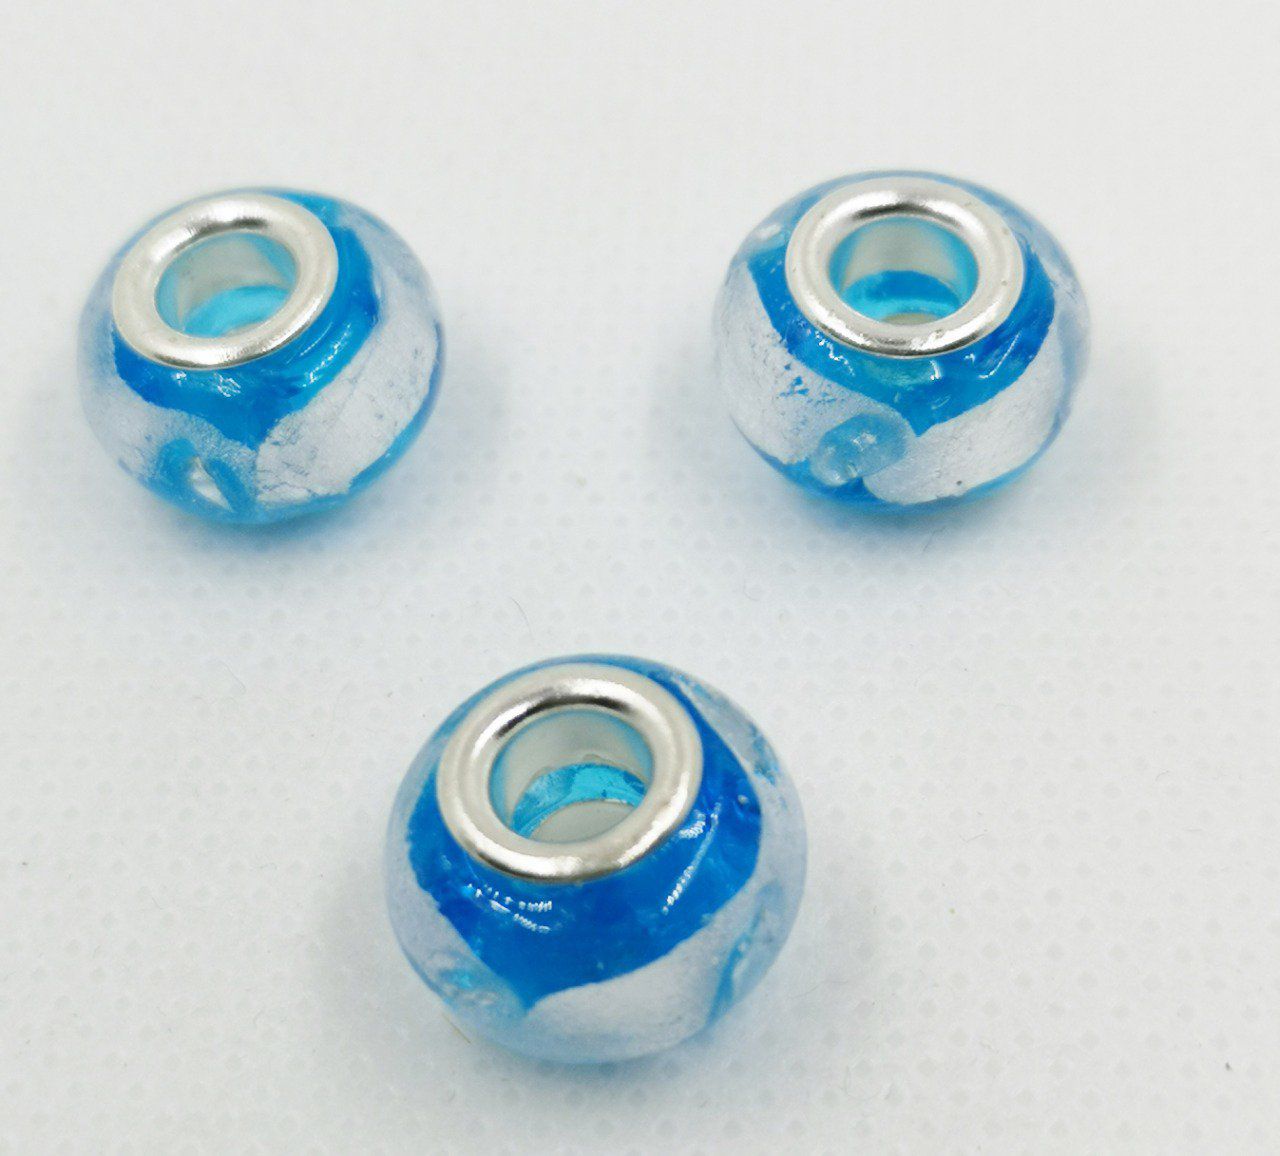 Perle européenne en verre avec feuille d'argent 15mm couleur bleue ciel